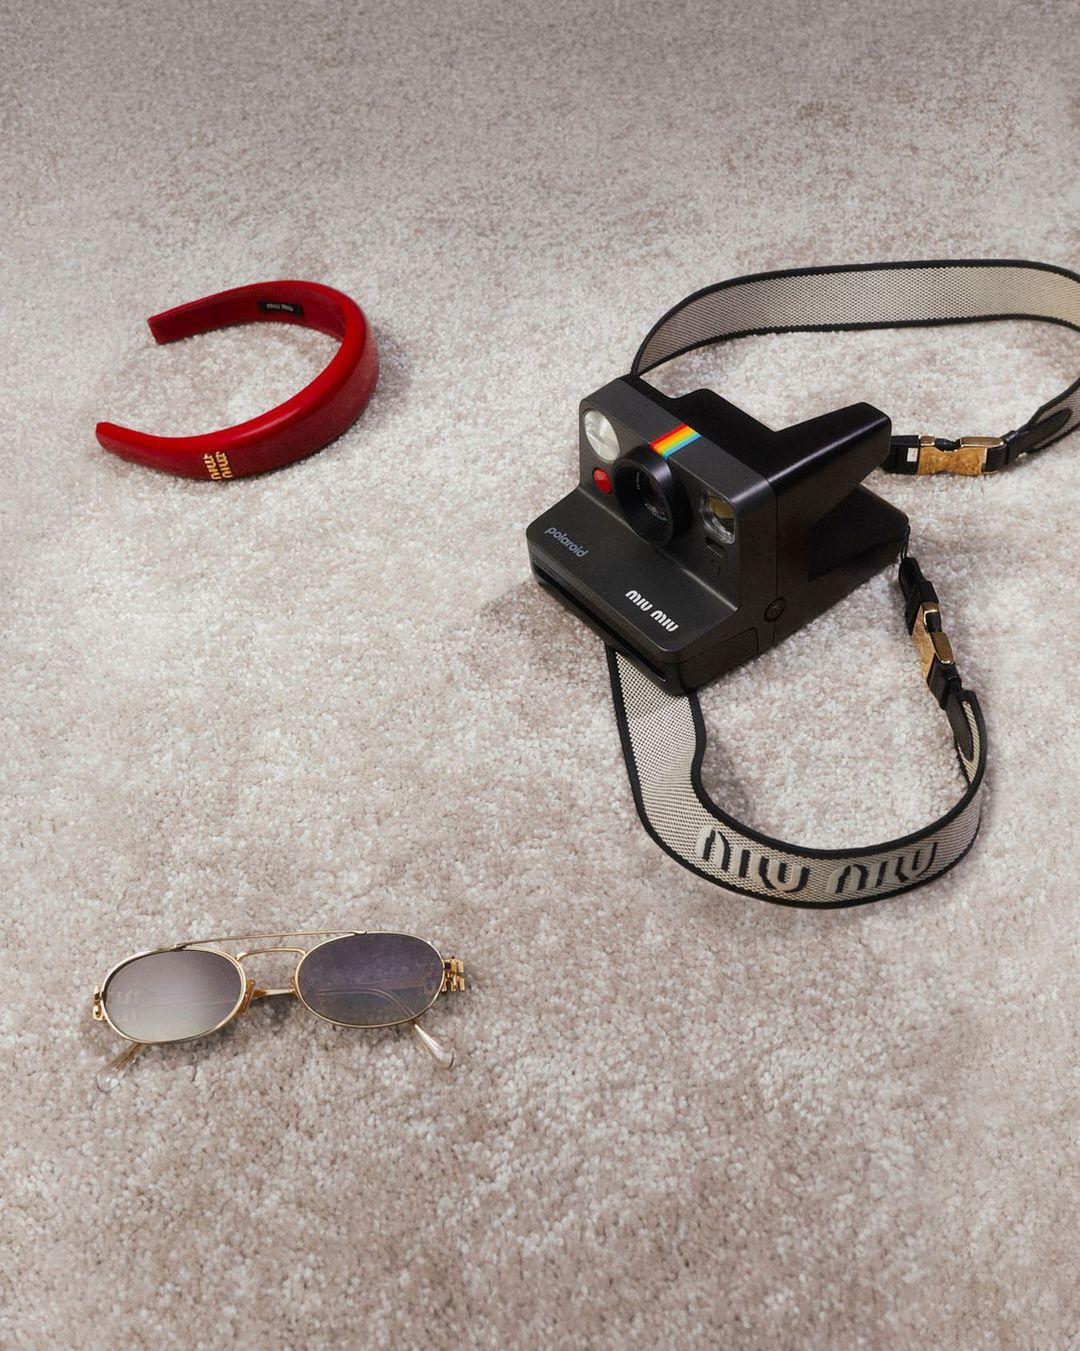 Happy Miu Year: Η συλλογή δώρων της Miu Miu περιέχει από Polaroid μηχανές μέχρι Marshall ακουστικά